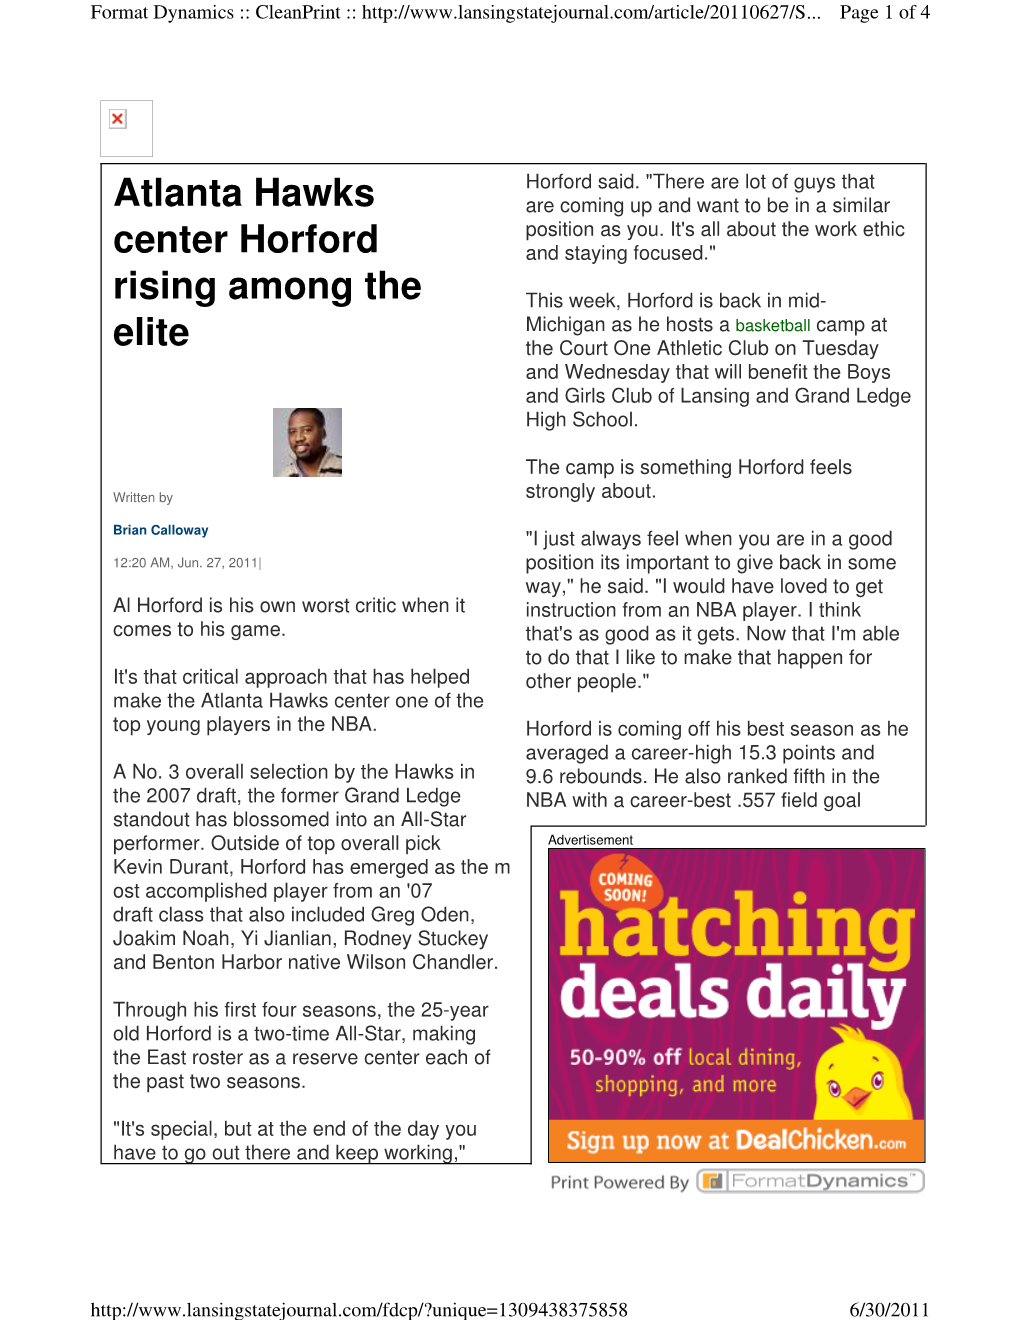 Atlanta Hawks Center Horford Rising Among the Elite